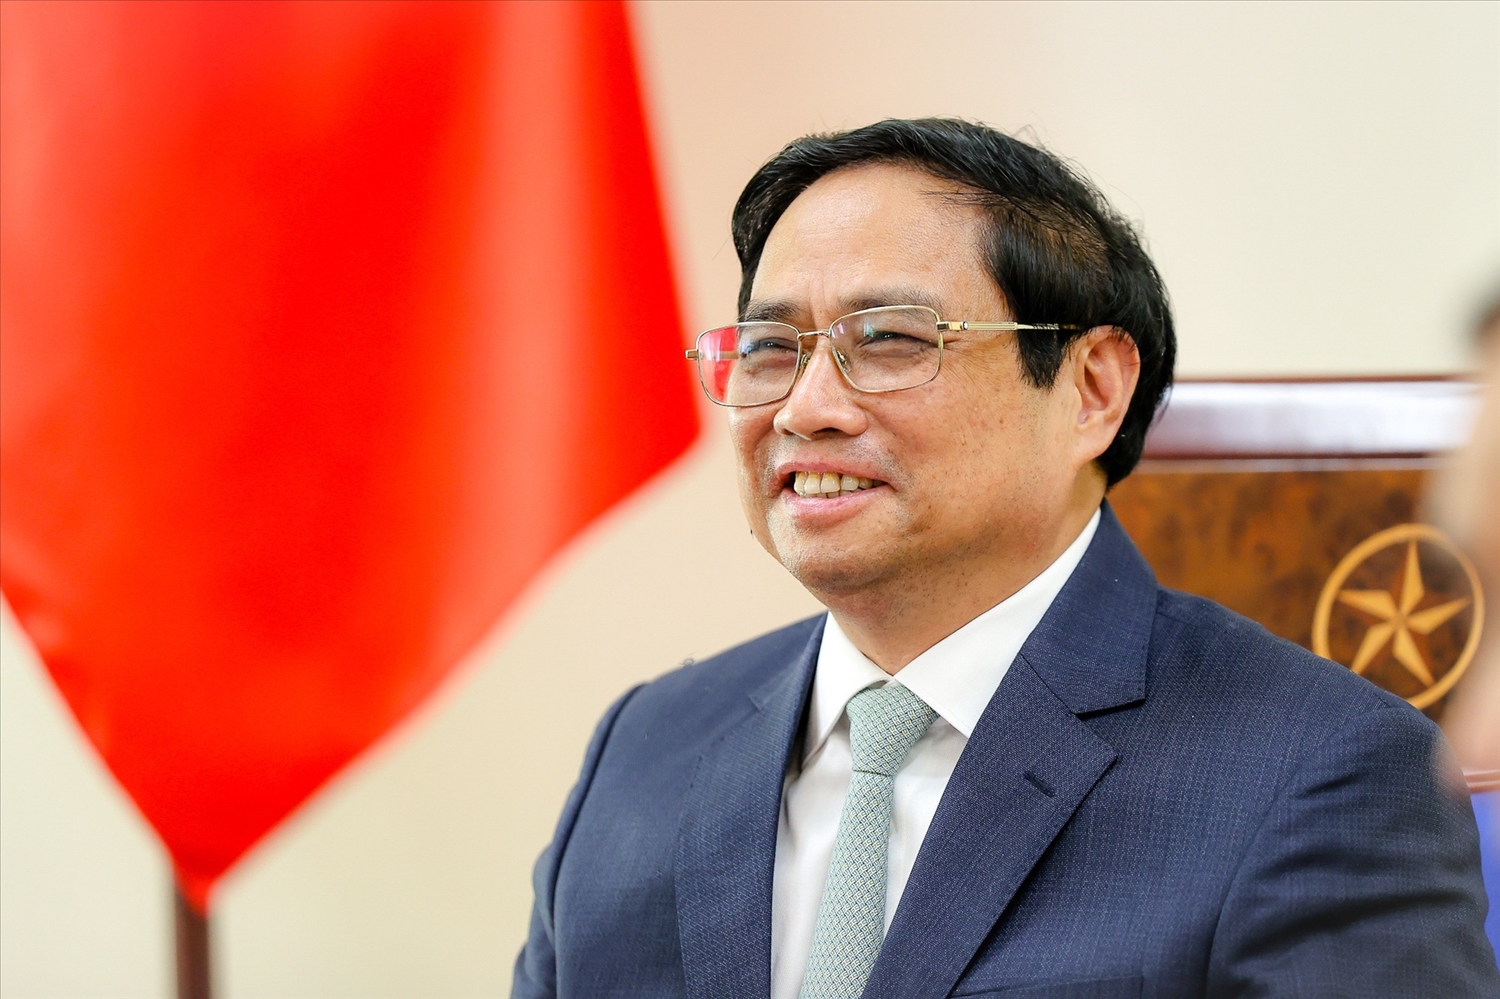 Thủ tướng Chính phủ Phạm Minh Chính điểm lại những bước phát triển tốt đẹp và hiệu quả trong quan hệ hai nước thời gian qua - Ảnh: VGP/Nhật Bắc